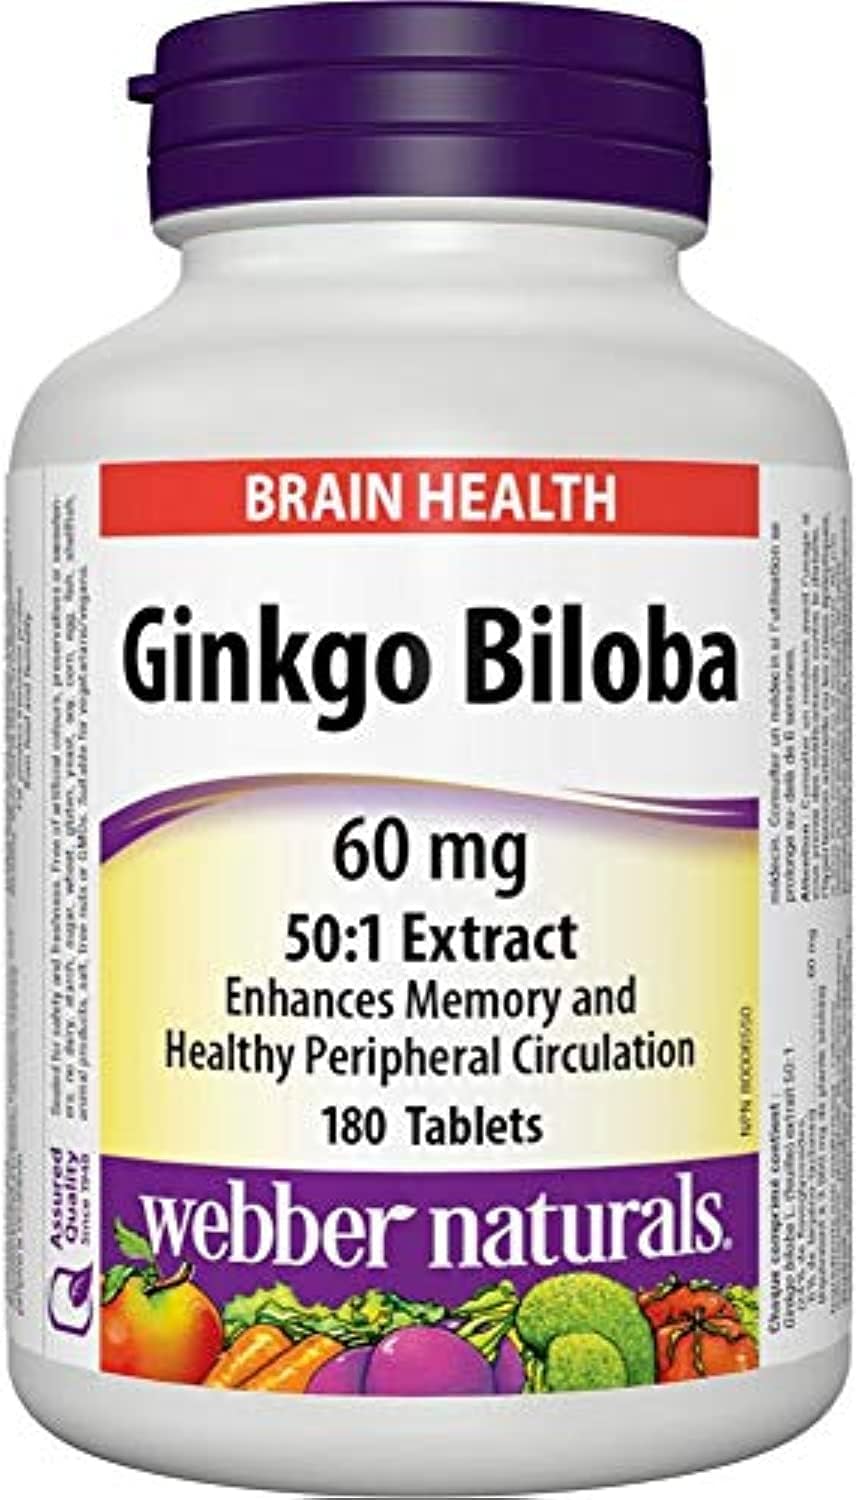 Webber Naturals Ginkgo Biloba,60mg - 90 Tablets